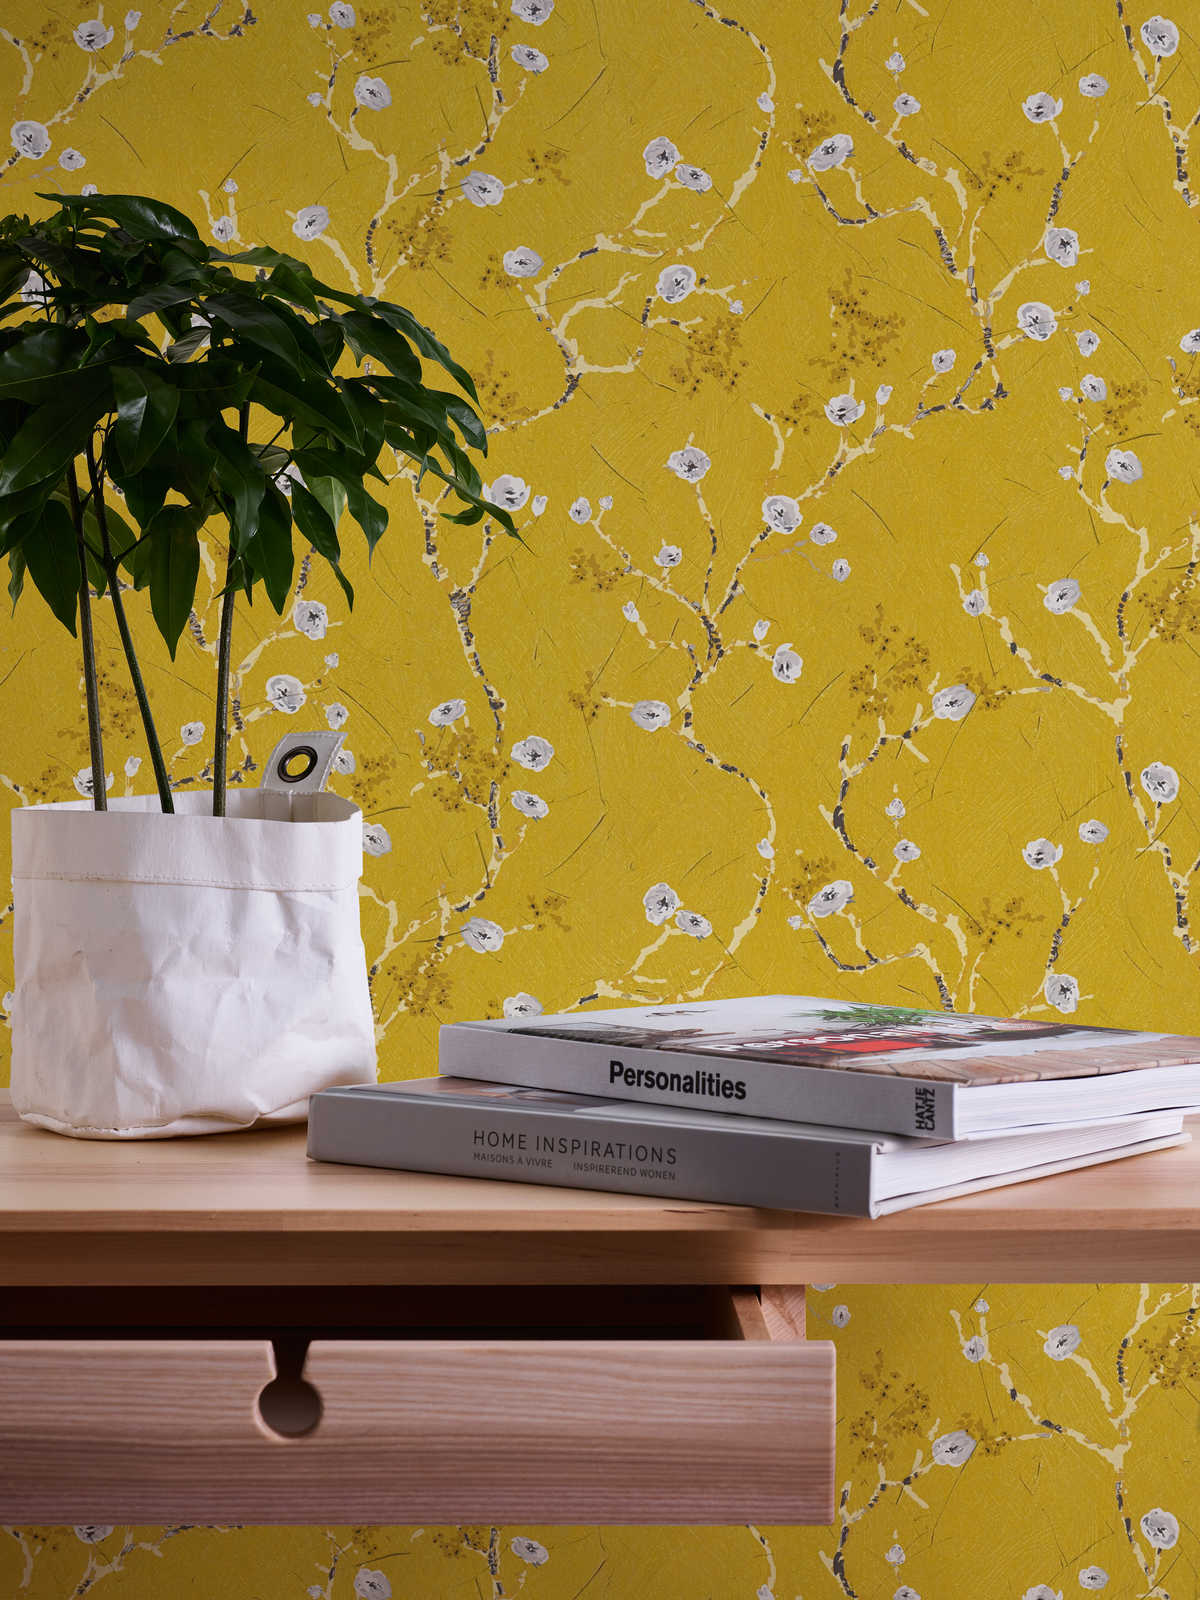             Papier peint jaune avec branches fleuries style dessin
        